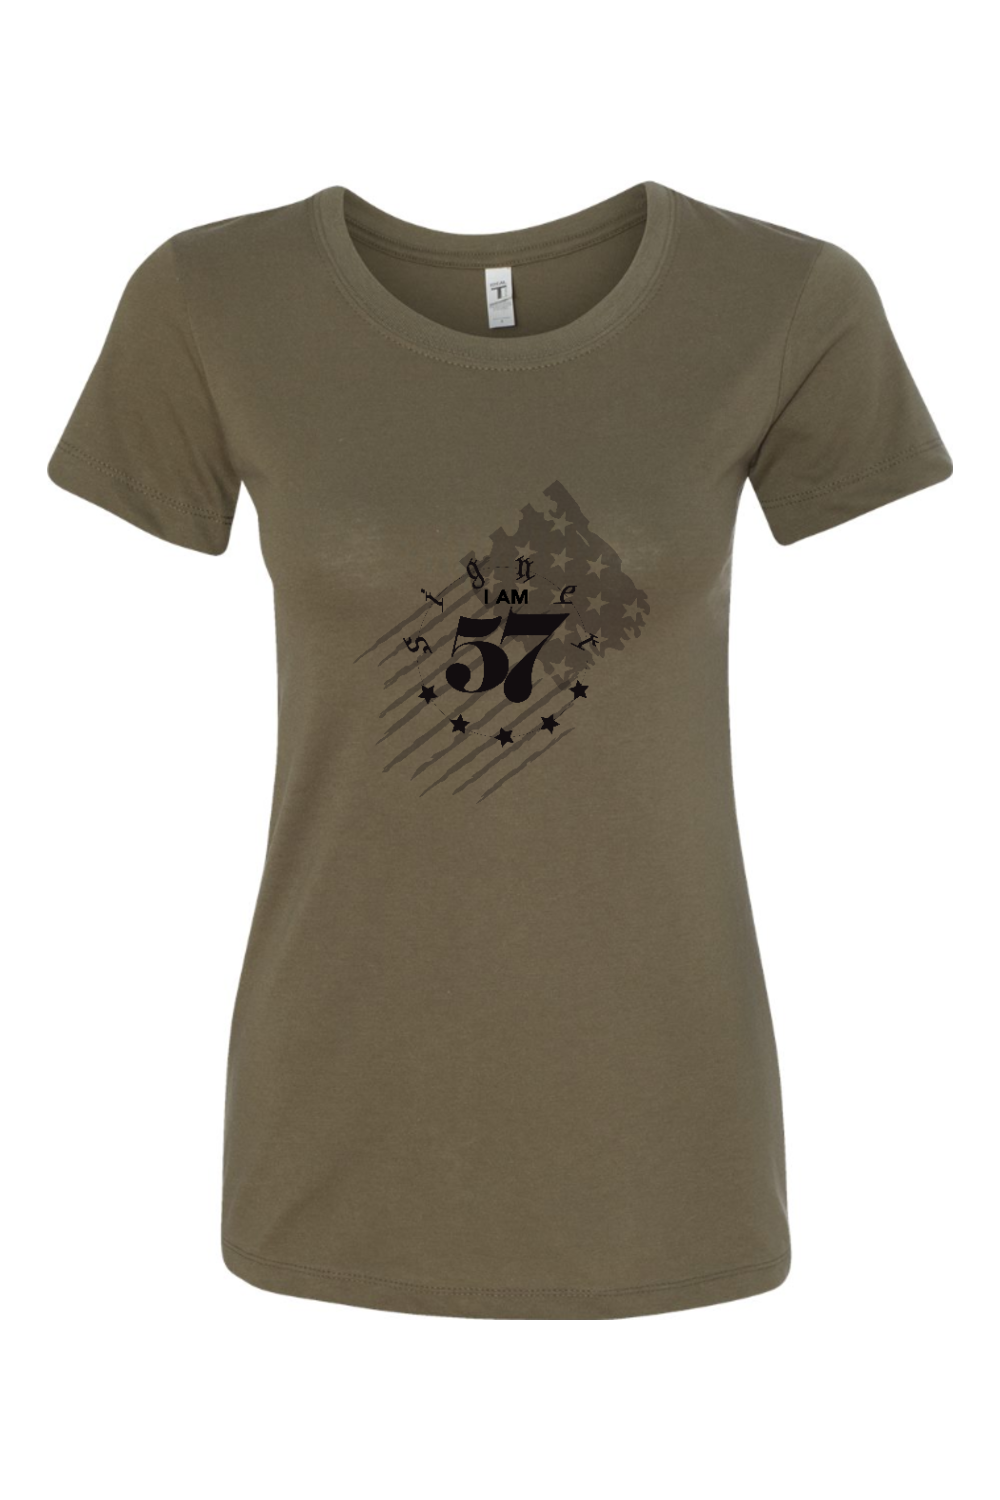 Women's T-Shirt - I Am Signer57